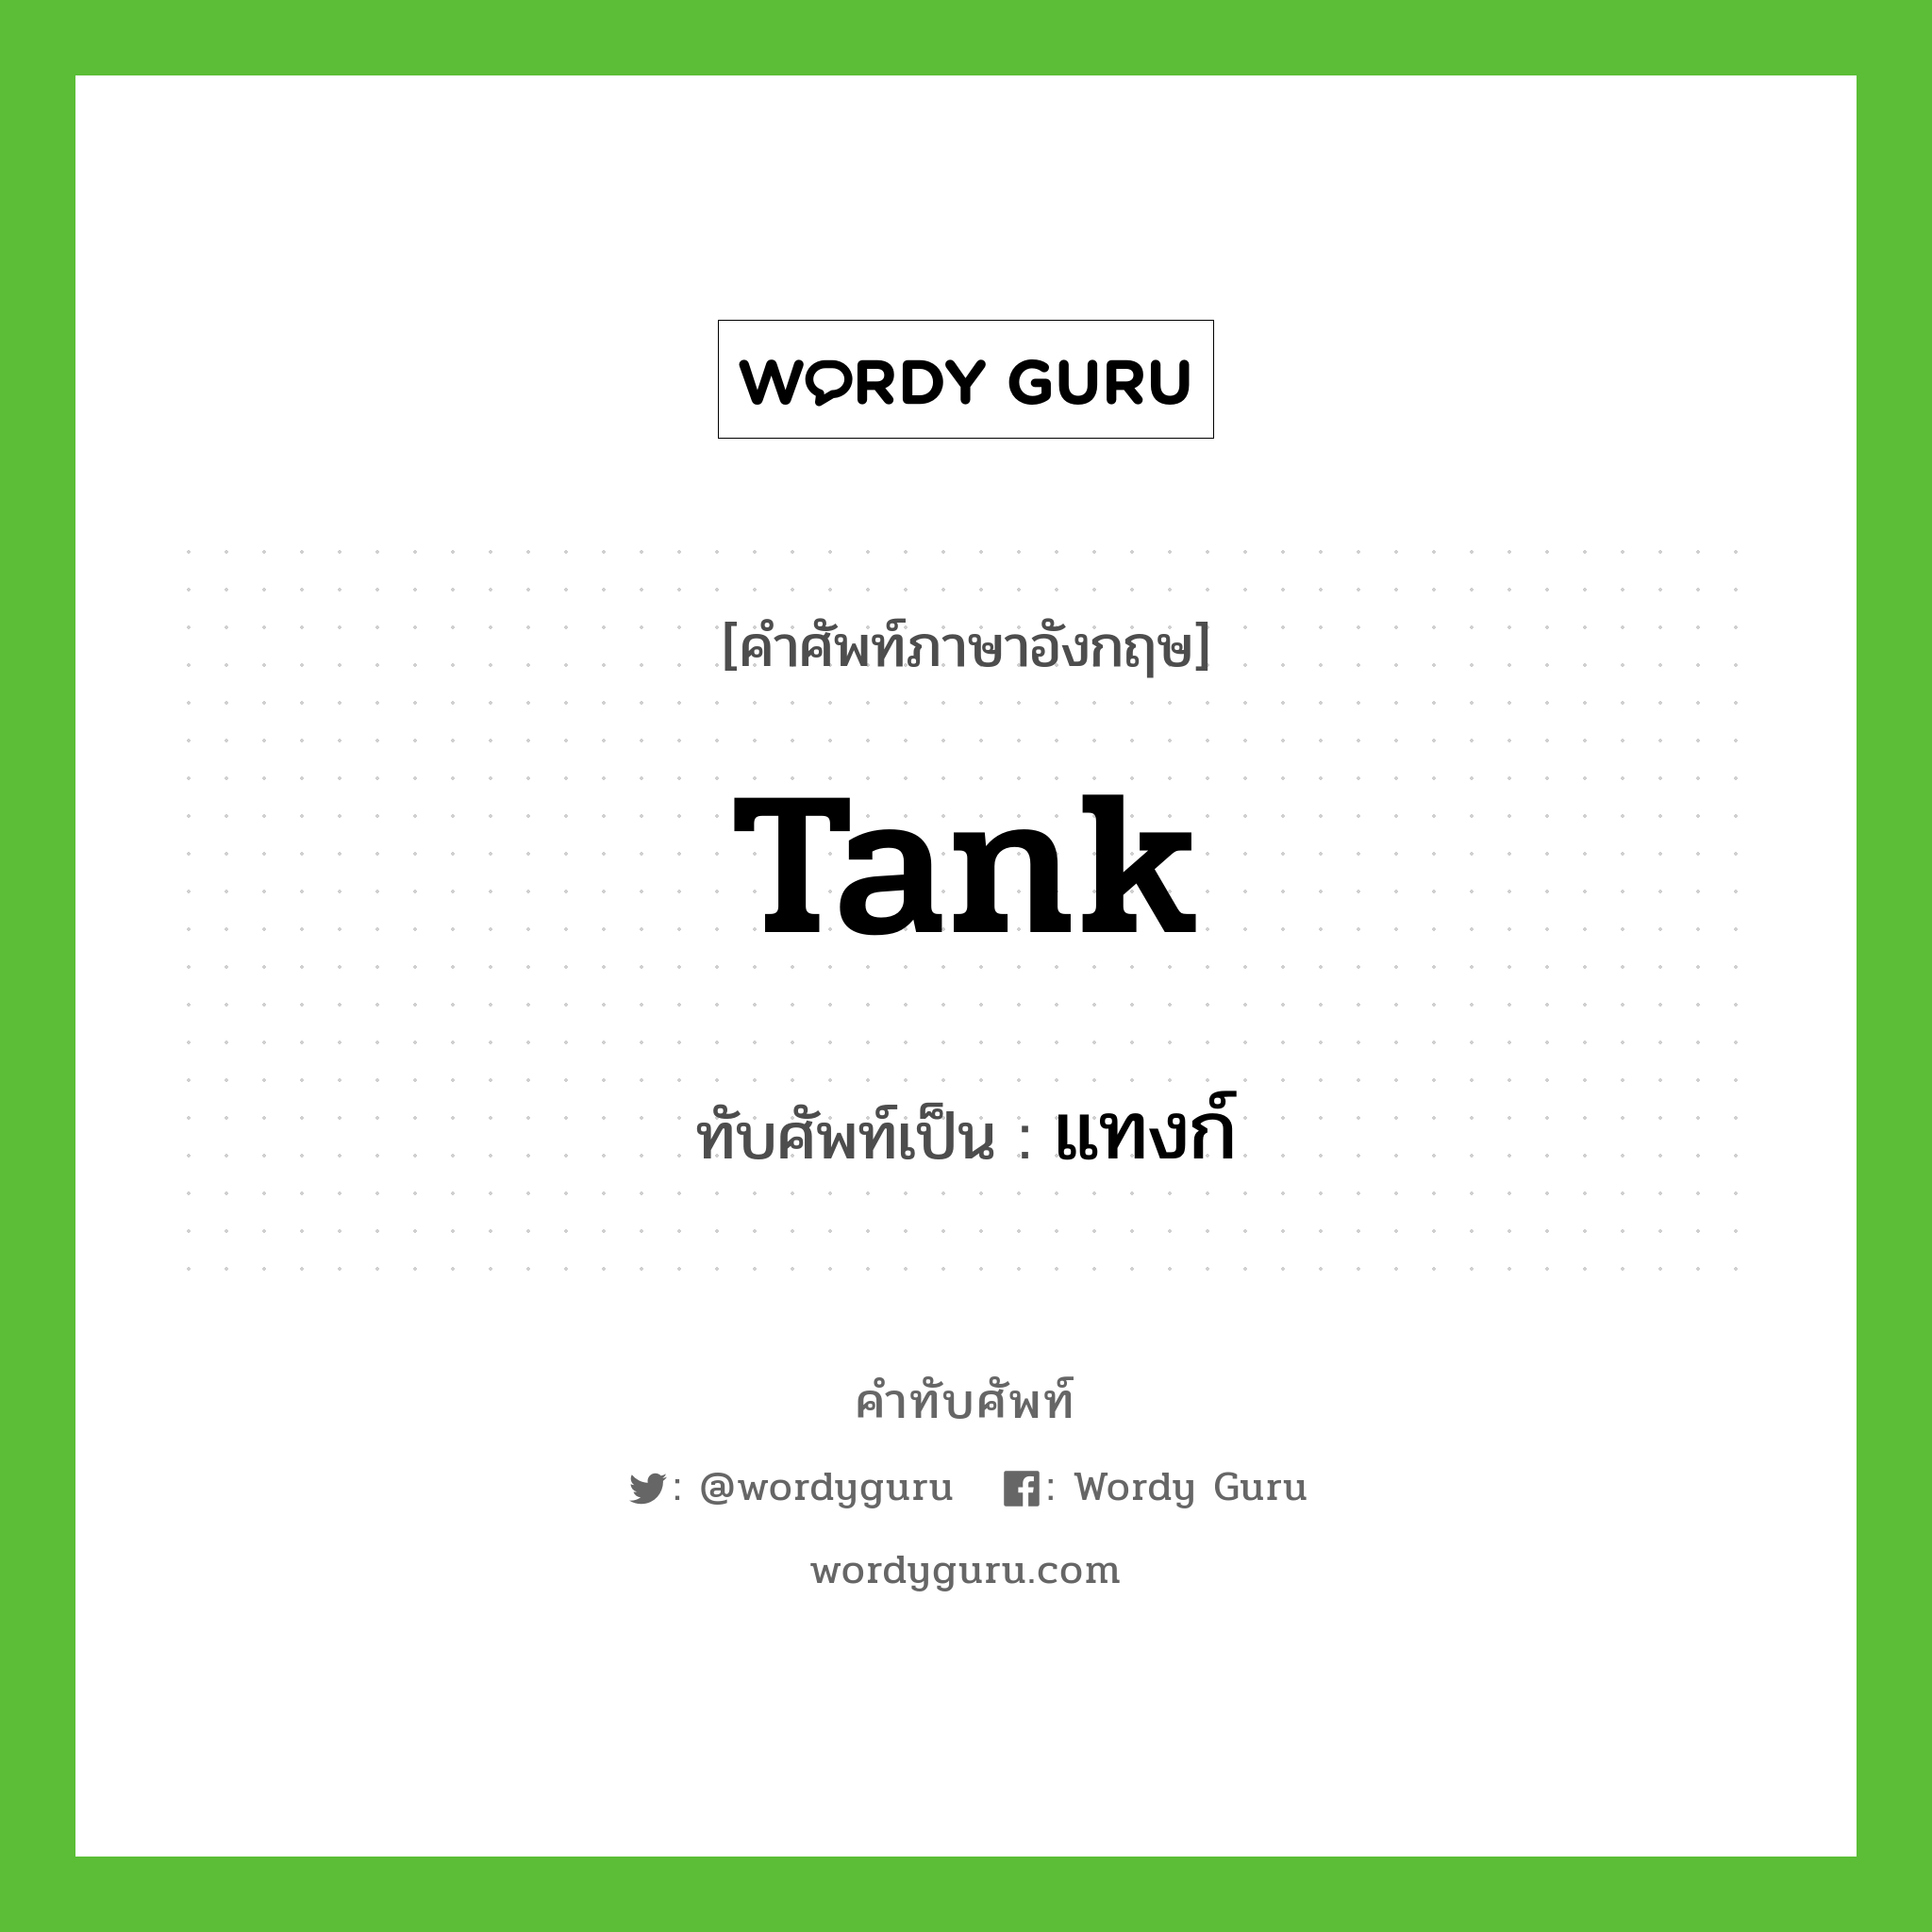 tank เขียนเป็นคำไทยว่าอะไร?, คำศัพท์ภาษาอังกฤษ tank ทับศัพท์เป็น แทงก์